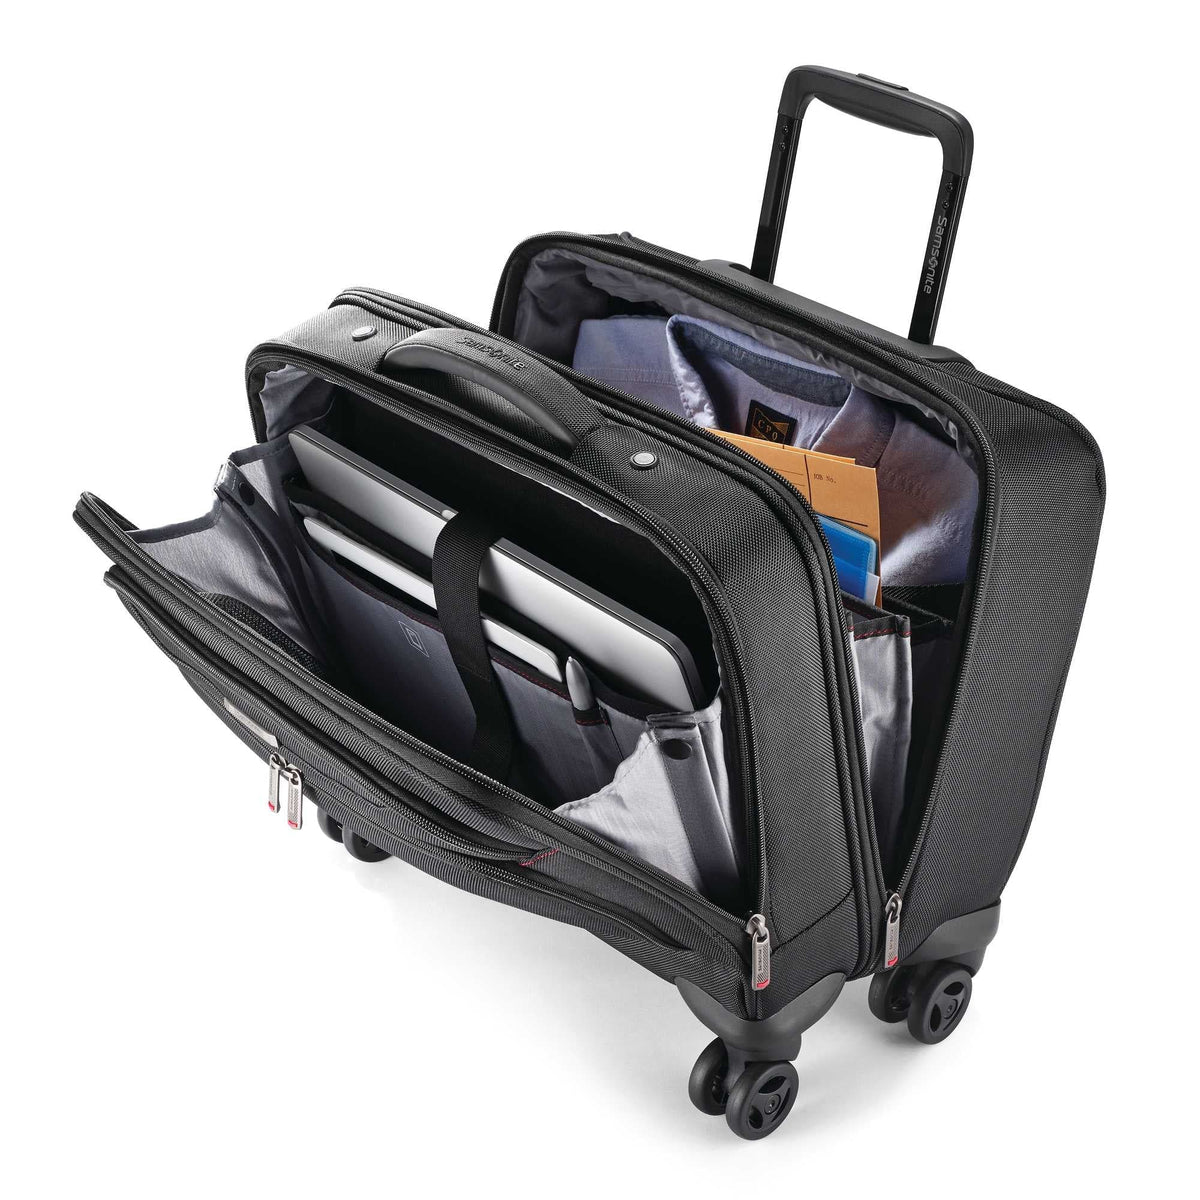 Samsonite Xenon 3.0 Mobile Office Spinner Luggage